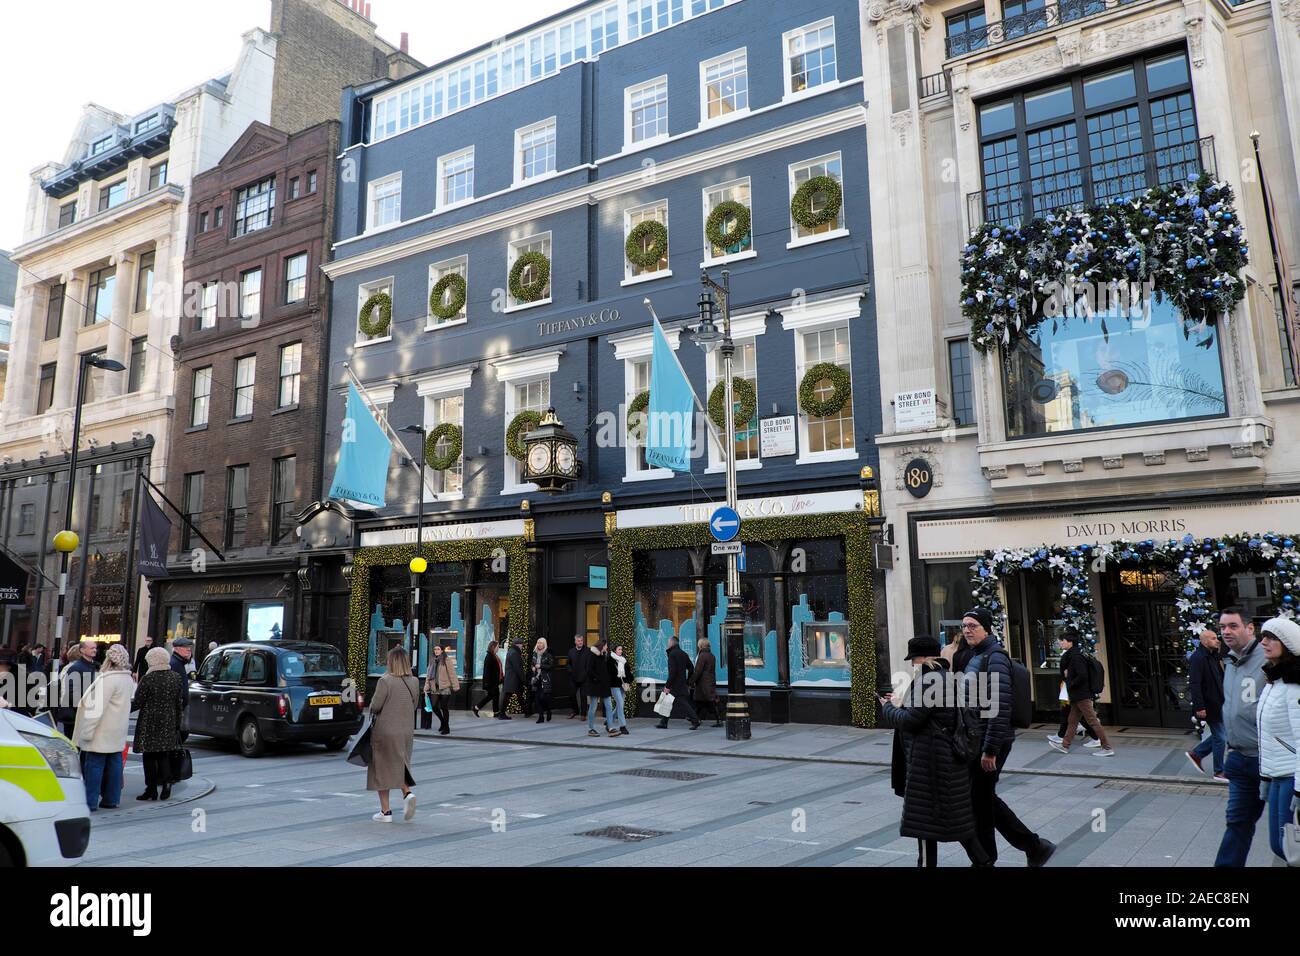 Tiffany & Co. Negozio gioielli esterno e gli acquirenti di Natale con le borse della spesa su Old Bond Street in Mayfair London W1 Inghilterra UK KATHY DEWITT Foto Stock